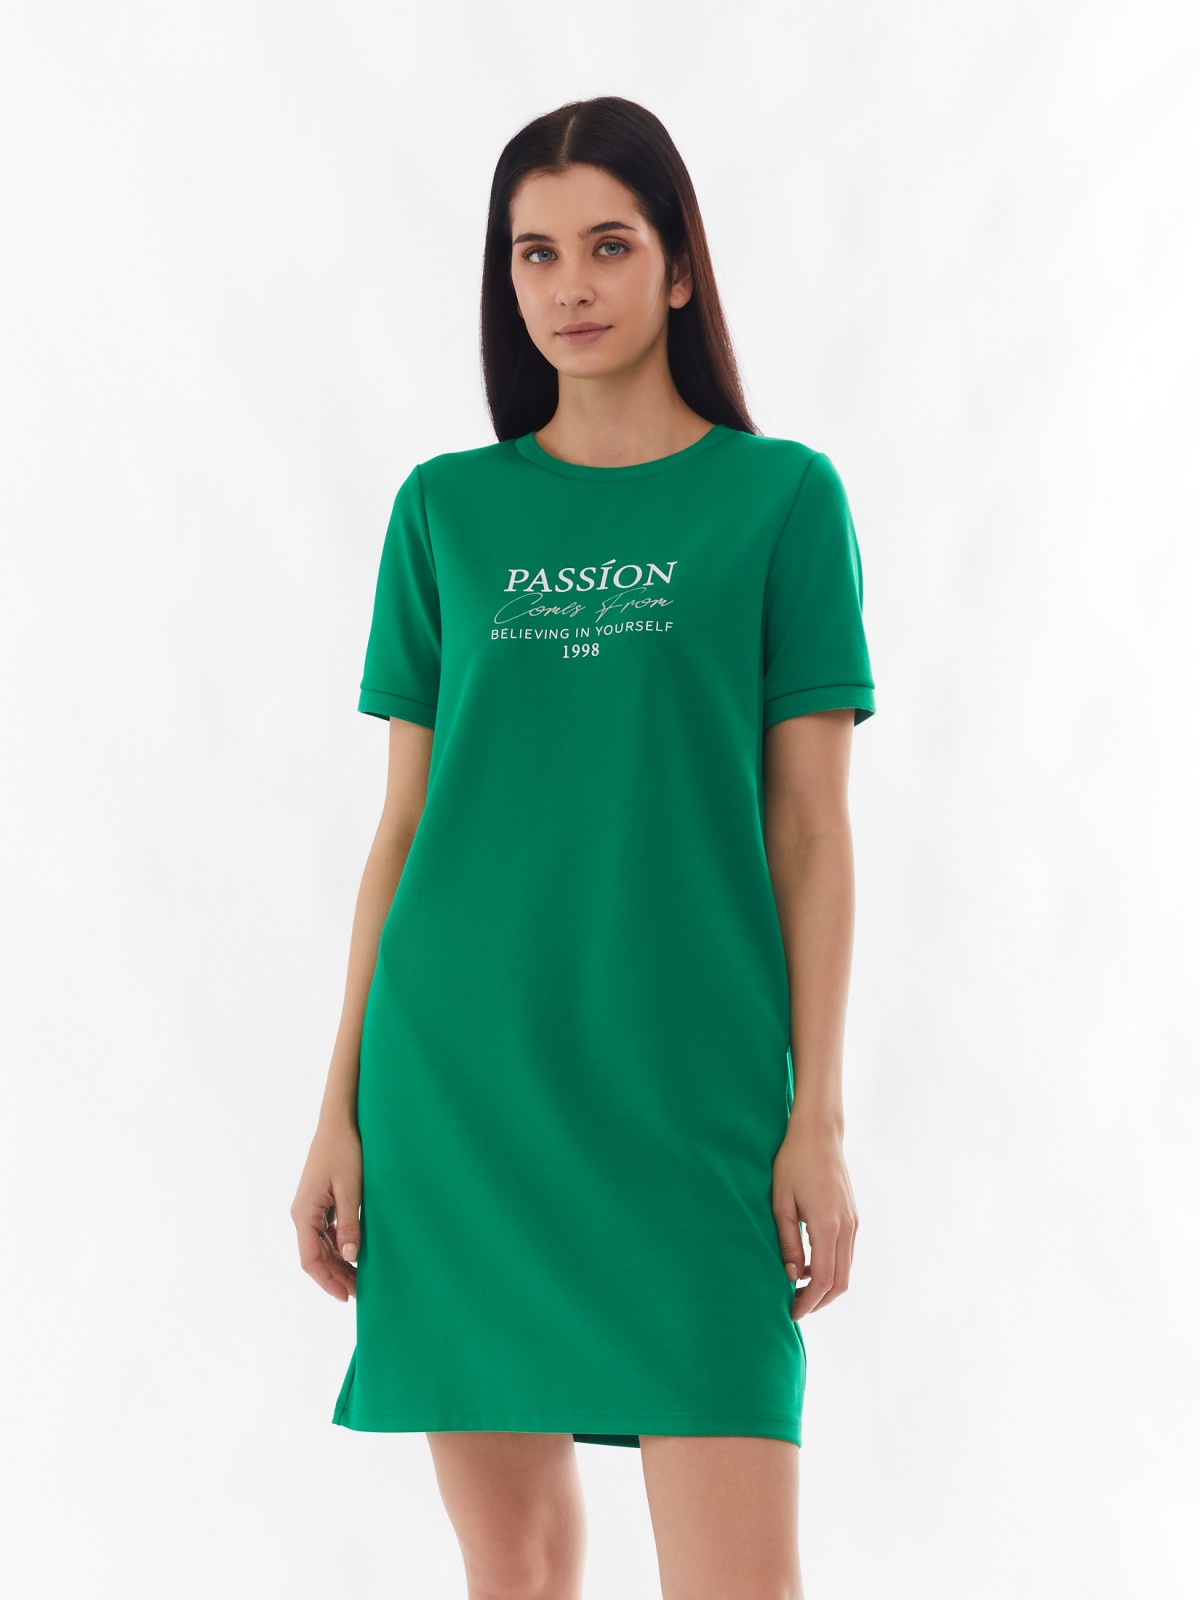 Платье-футболка с коротким рукавом и принтом-надписью zolla 024138135132, цвет зеленый, размер S - фото 1